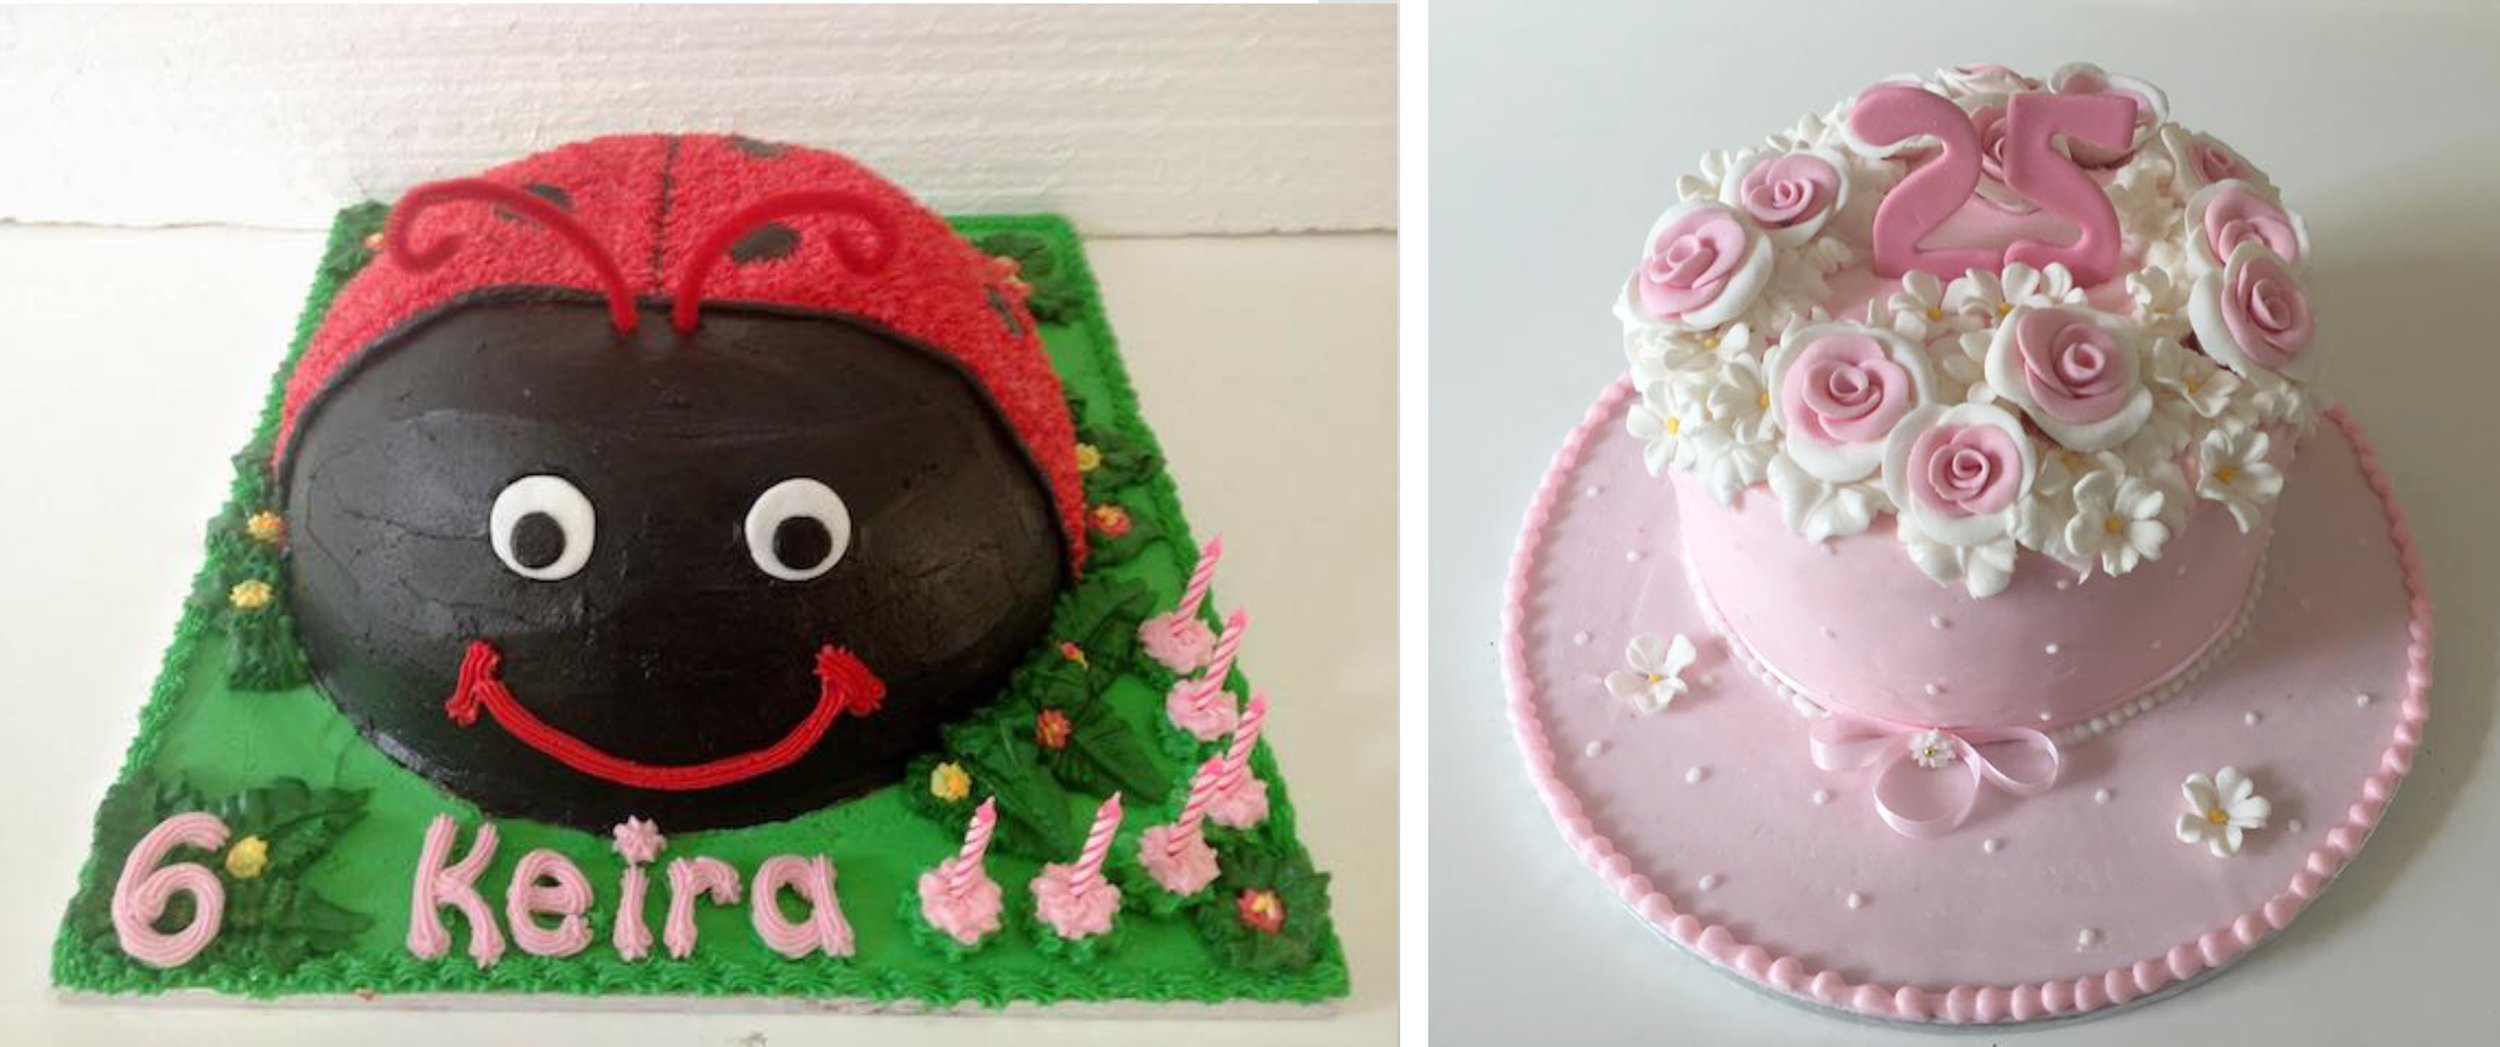 Cakes Anamorphic Birthday 3.jpg